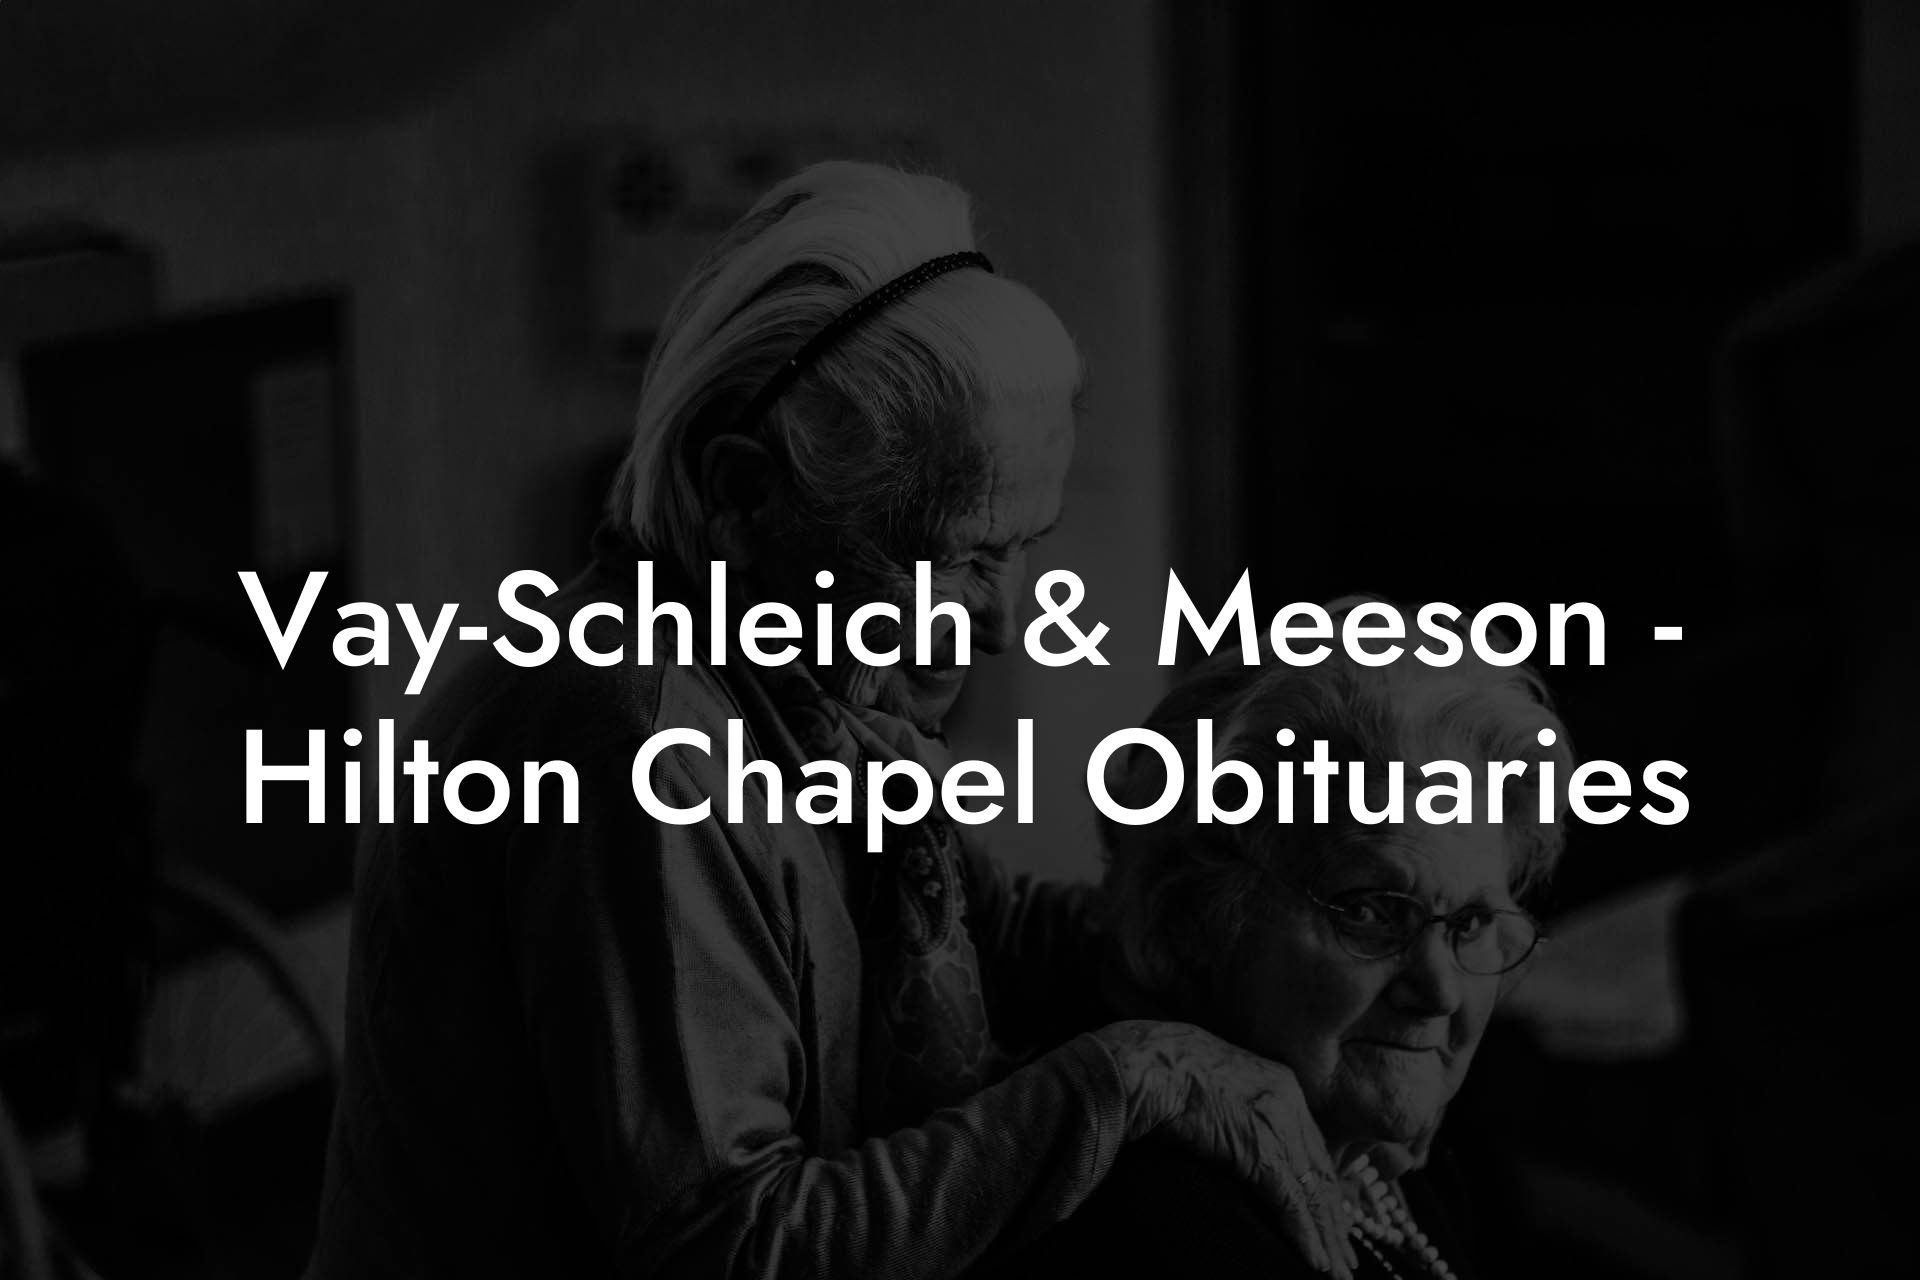 Vay-Schleich & Meeson - Hilton Chapel Obituaries